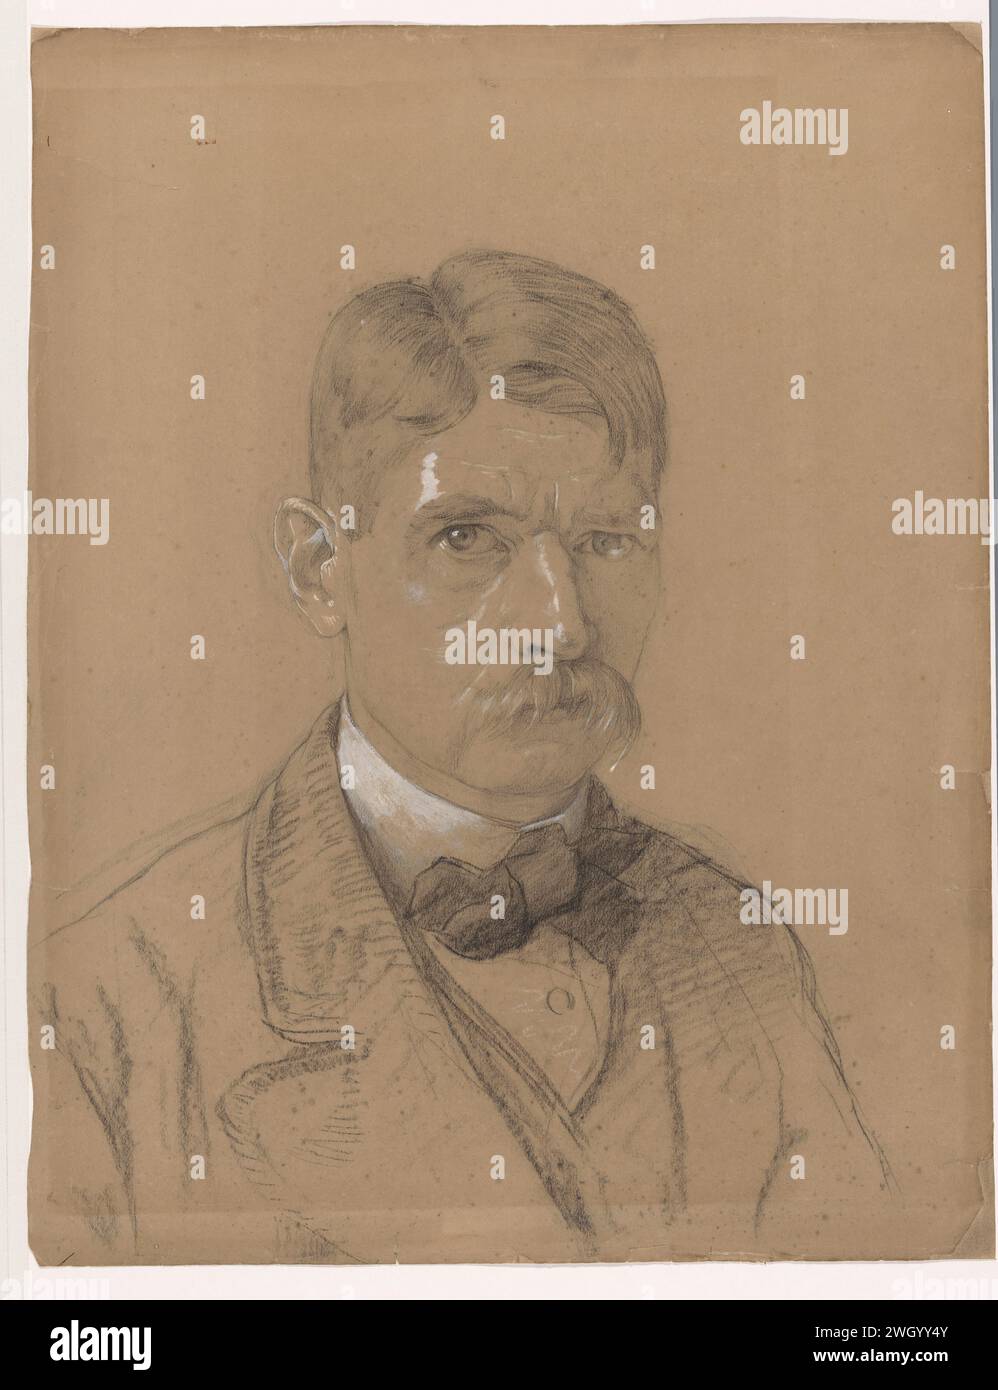 Autoportrait, Martinus van Regteren Altena, 1876 - 1908 papier à dessin. craie. pinceaux de terrasse personnages historiques. portrait, autoportrait de peintre Banque D'Images